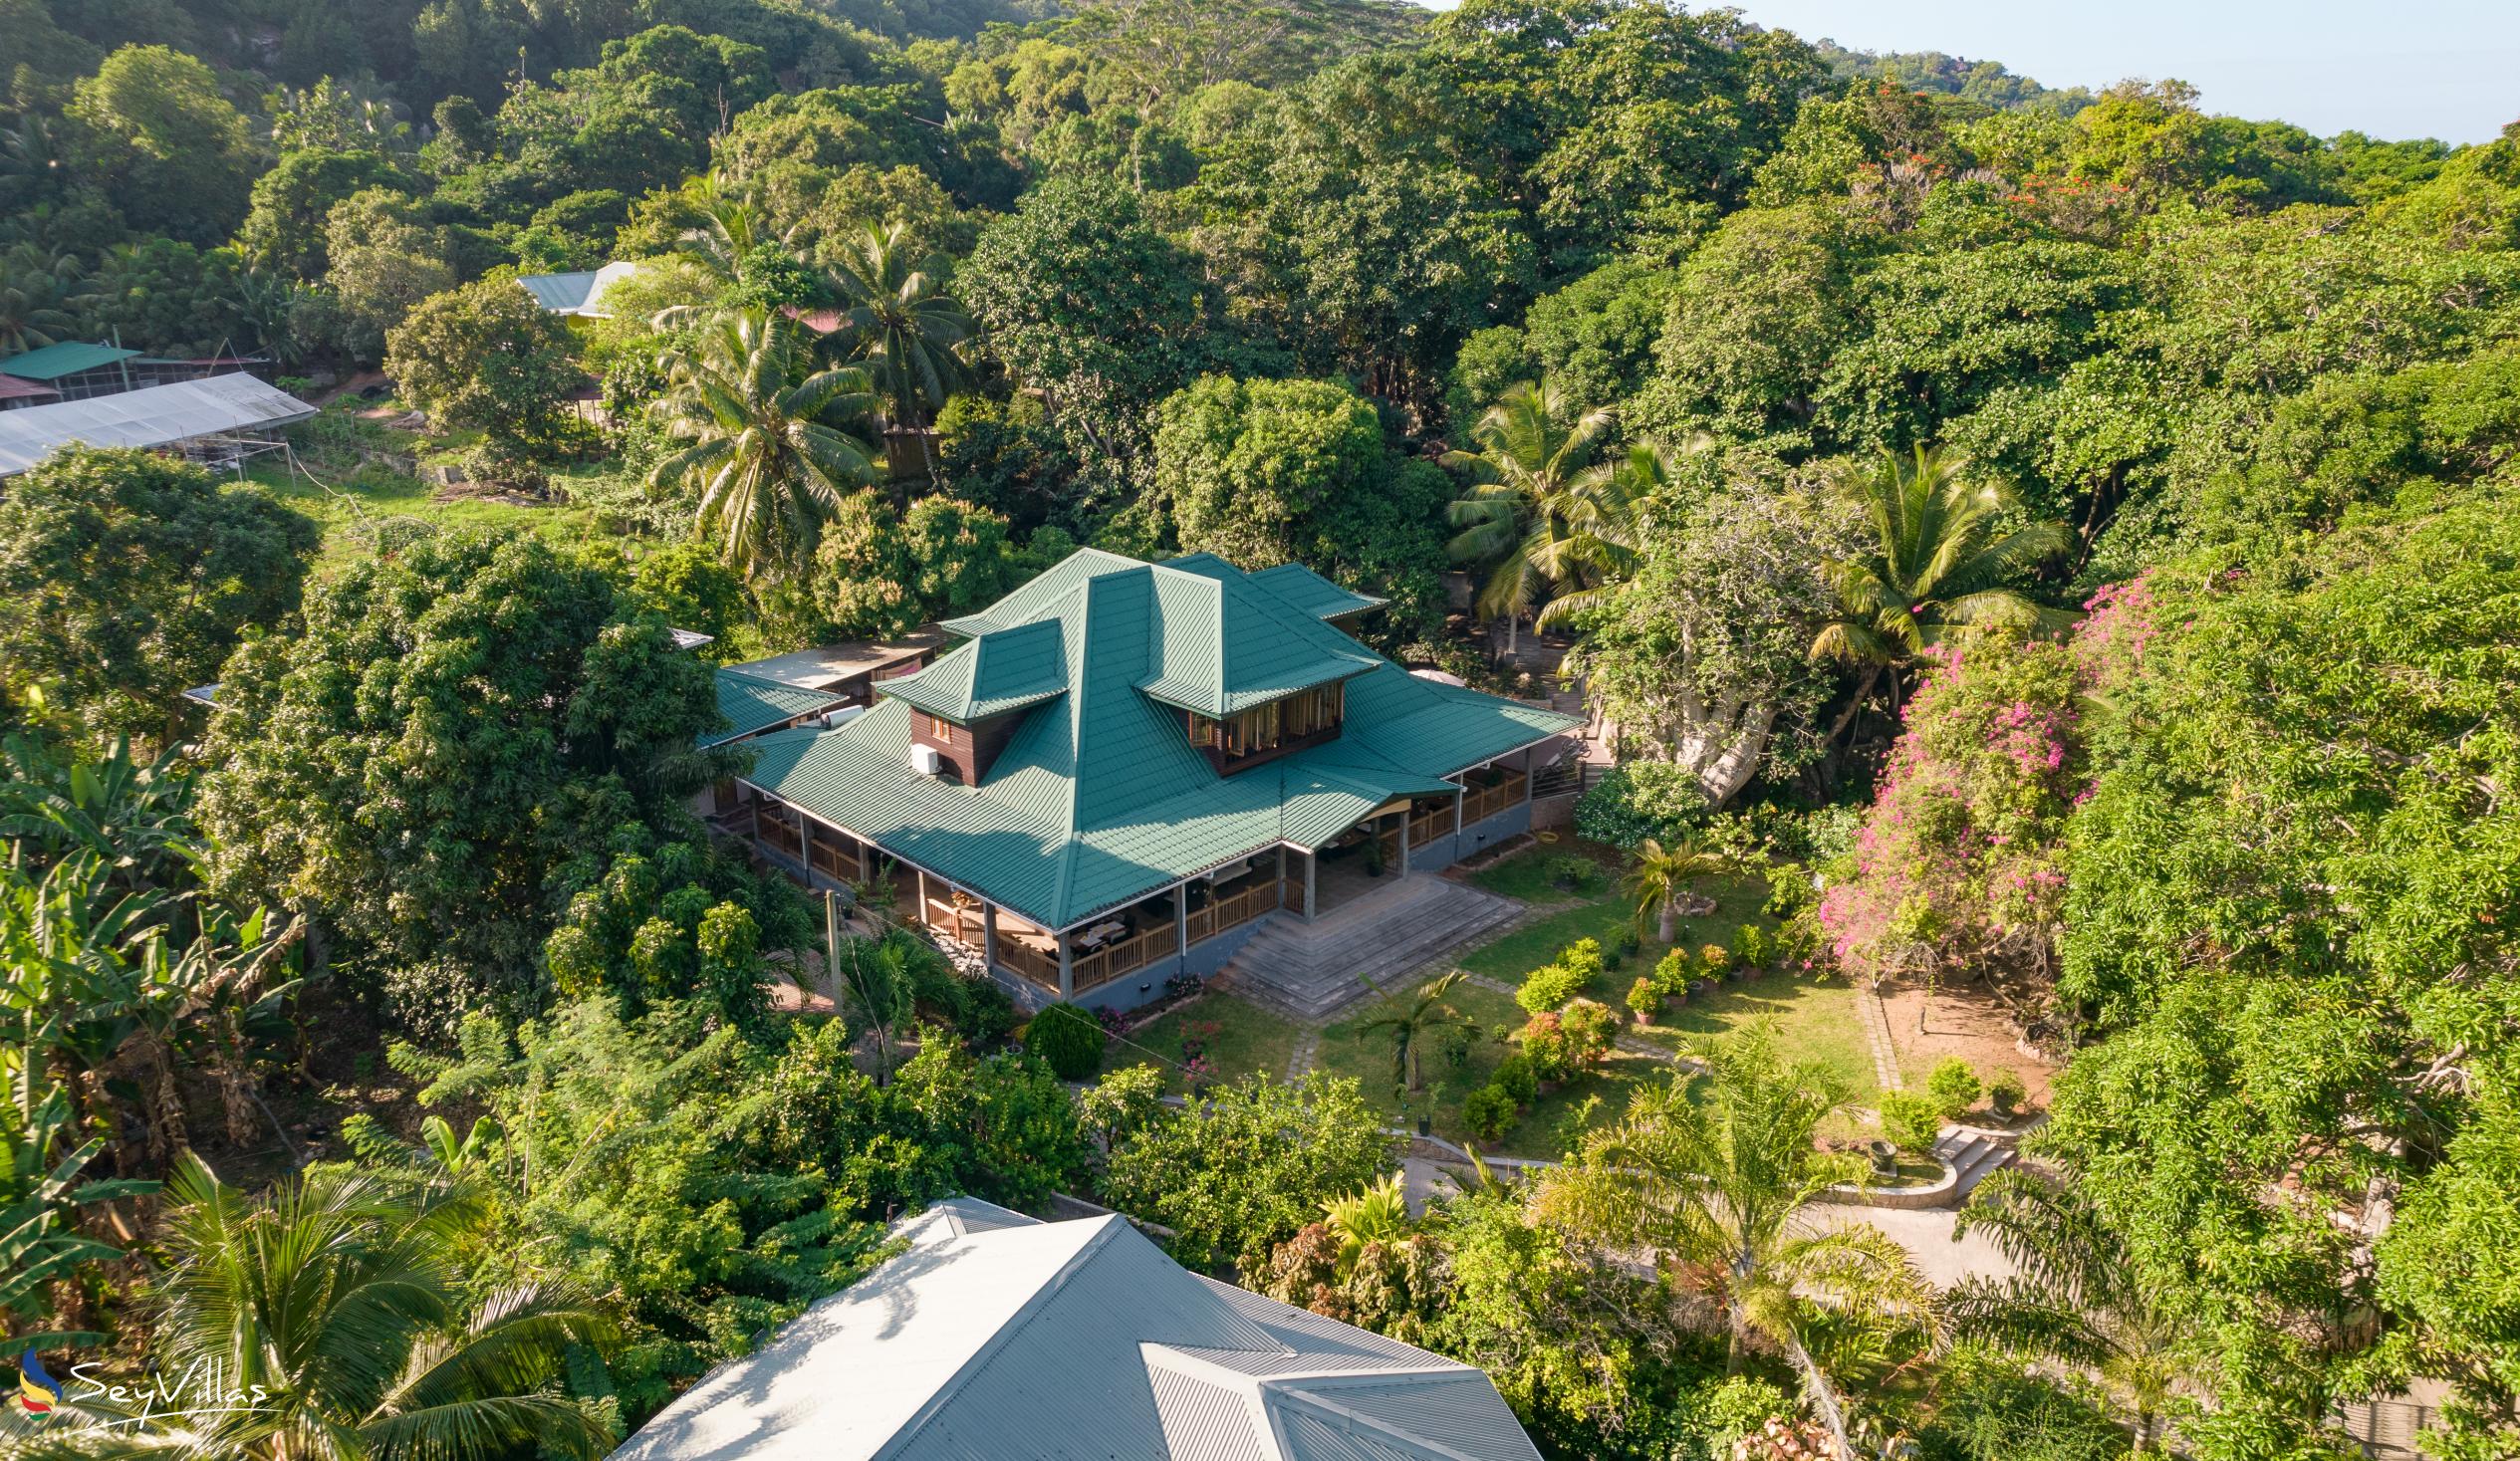 Foto 3: Pension Michel - Villa Roche Bois - Aussenbereich - La Digue (Seychellen)